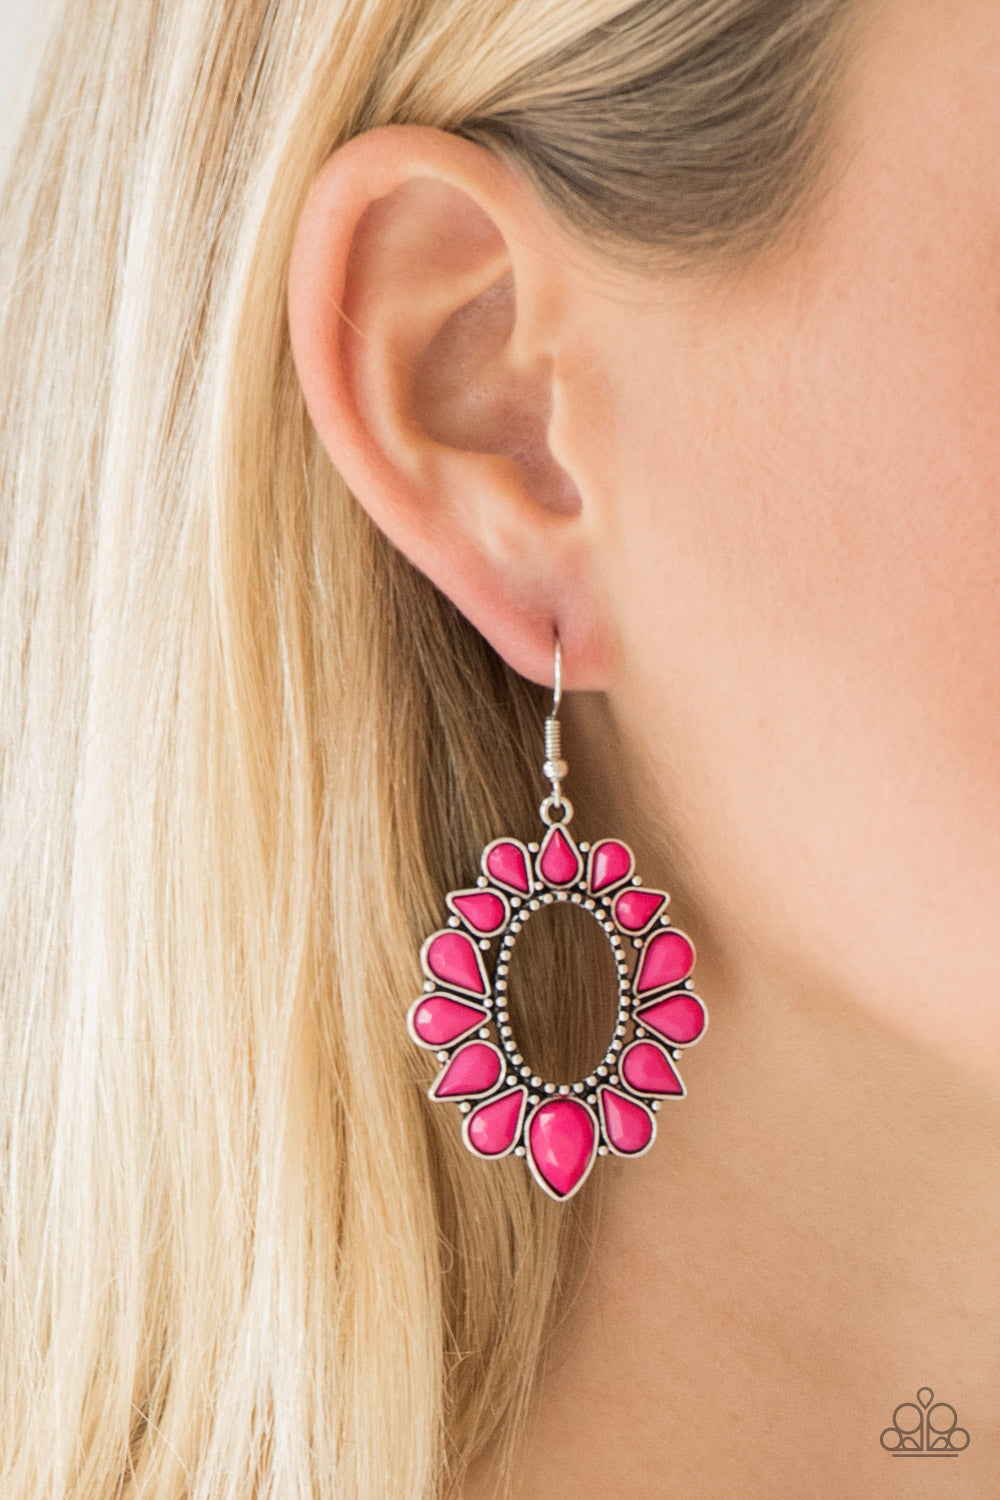 Paparazzi Earring ~ Fashionista Flavor - Pink Teardrops Earring